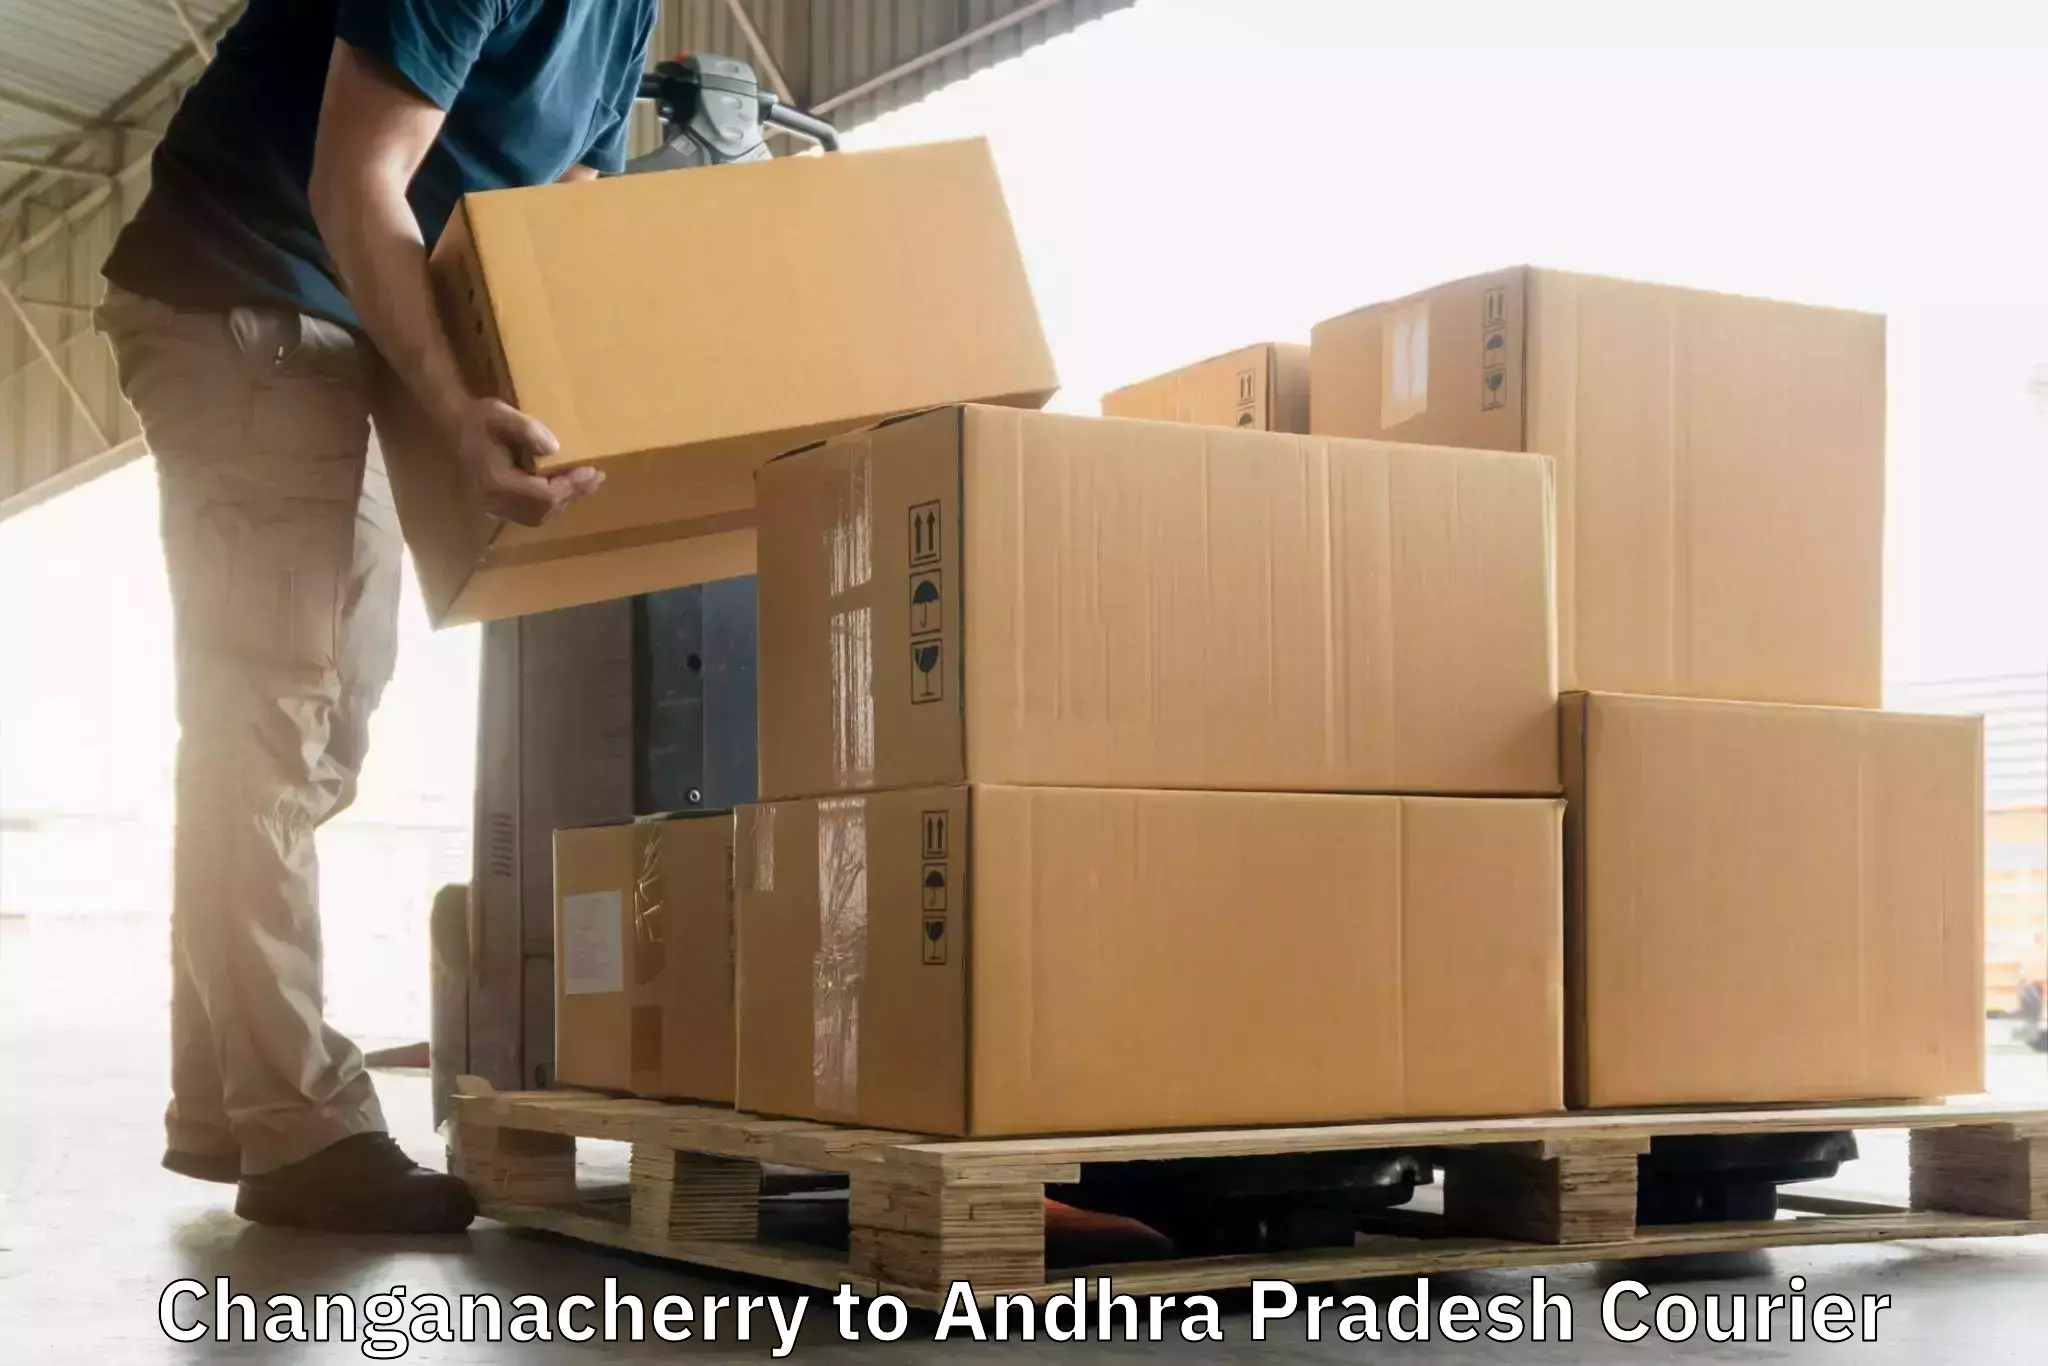 Customer-centric shipping Changanacherry to Uravakonda